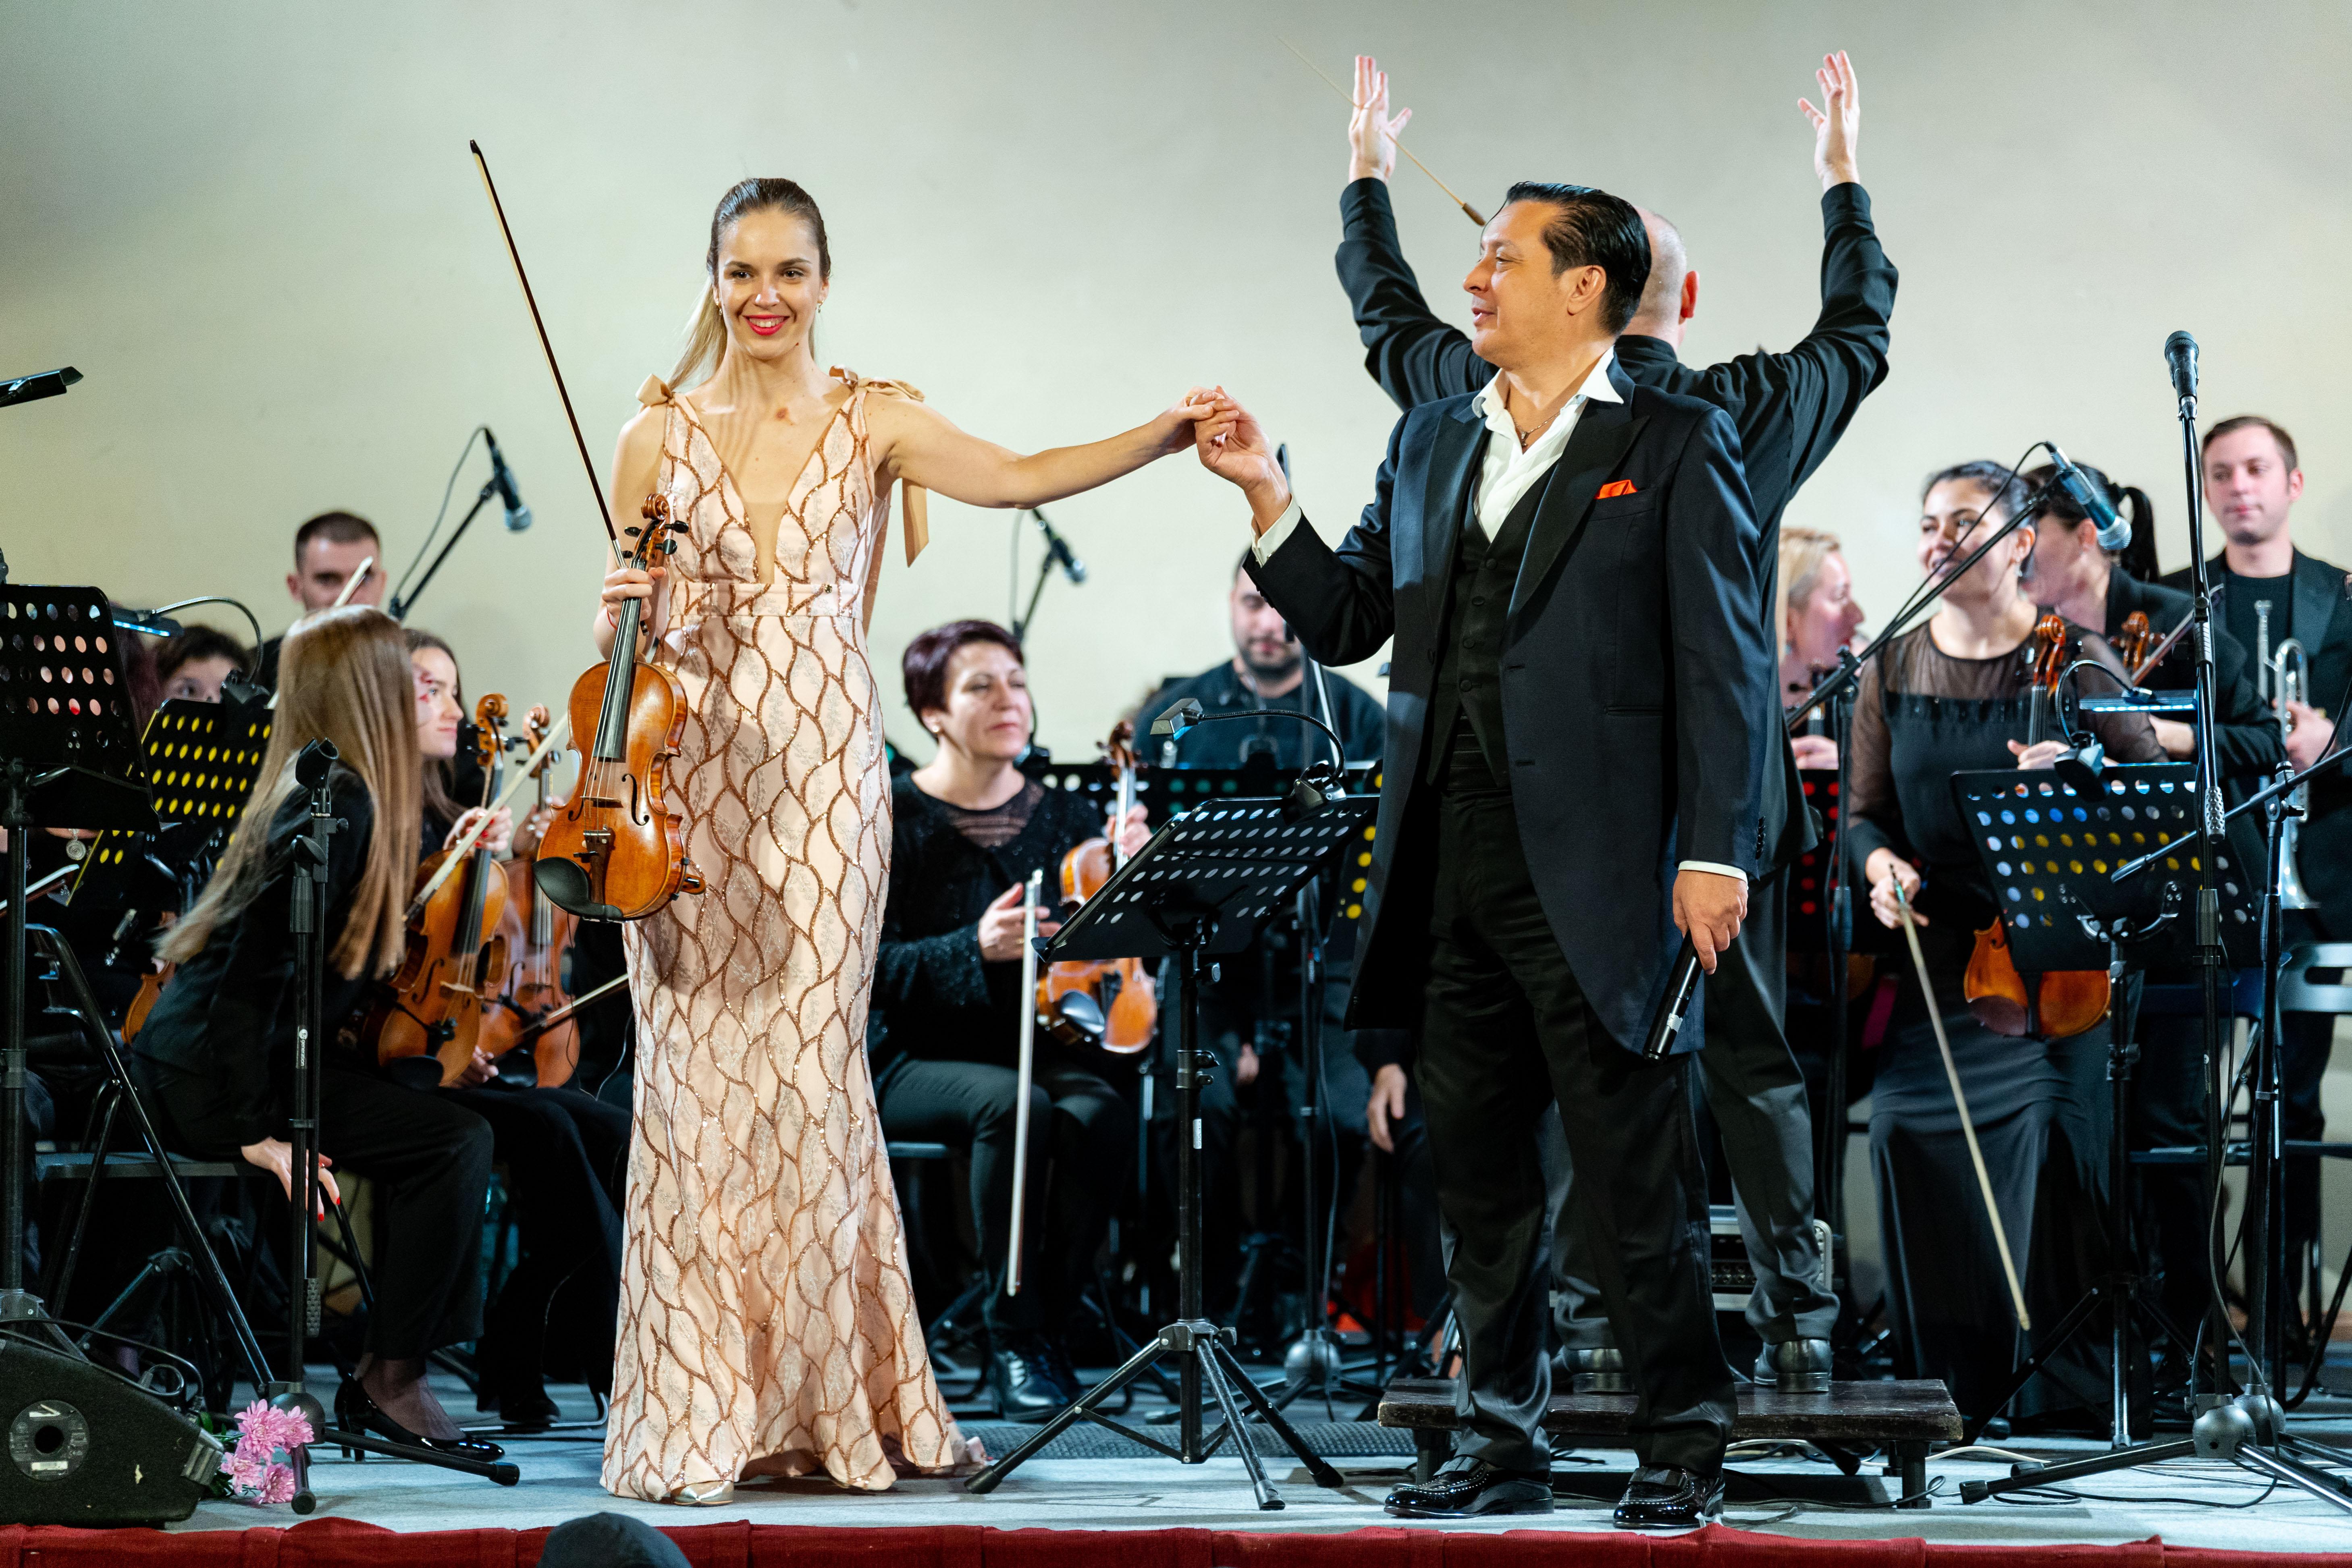 Васил Петров празнува ЧРД с концерт в Пловдив, през април ще е на сцена и в